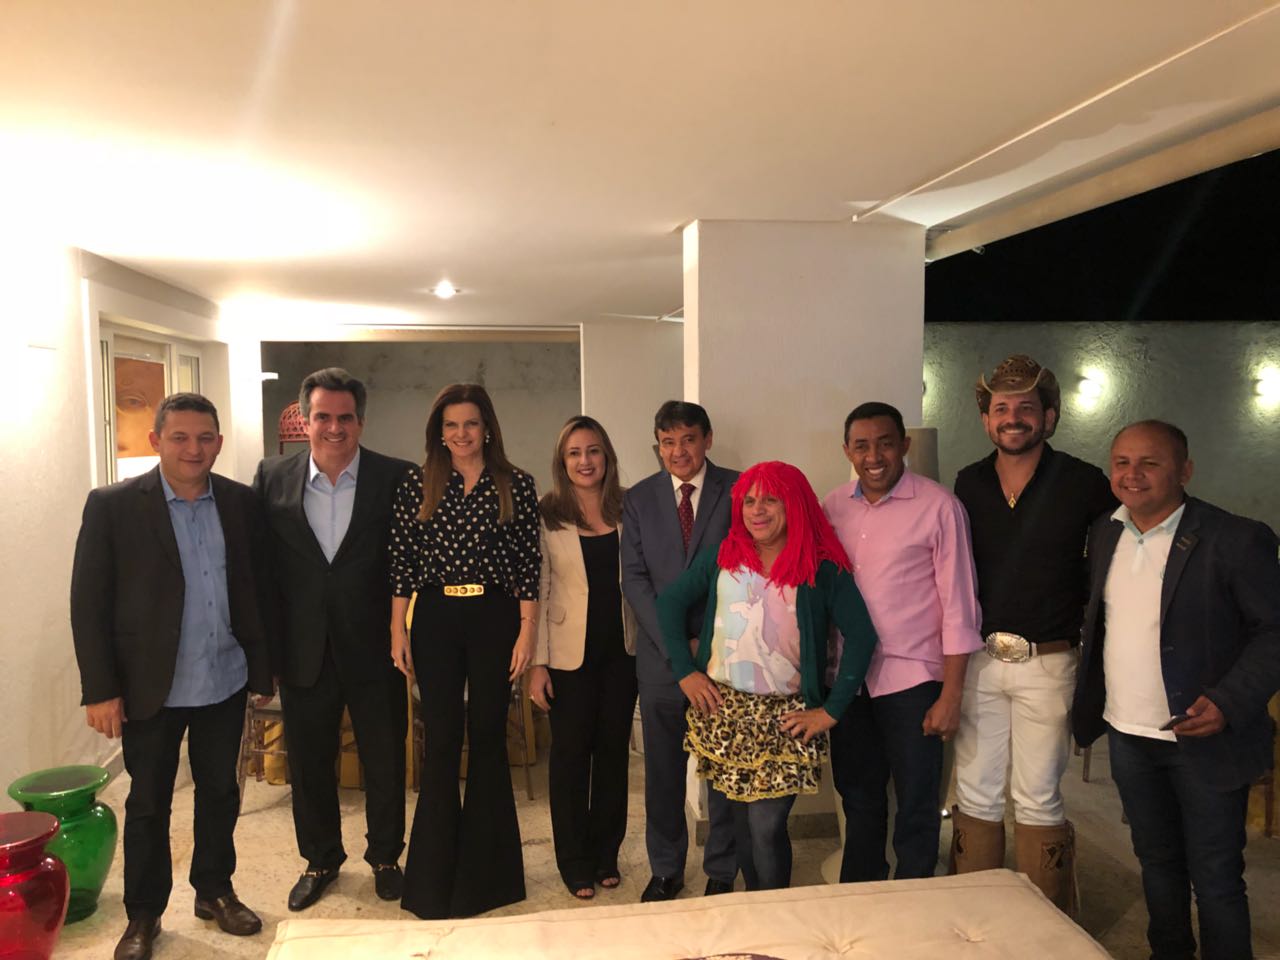  À noite, o senador reuniu alguns prefeitos em um jantar com show da banda Xenhenhem, onde compareceram prefeitos e o governador Wellington Dias, entre outros.